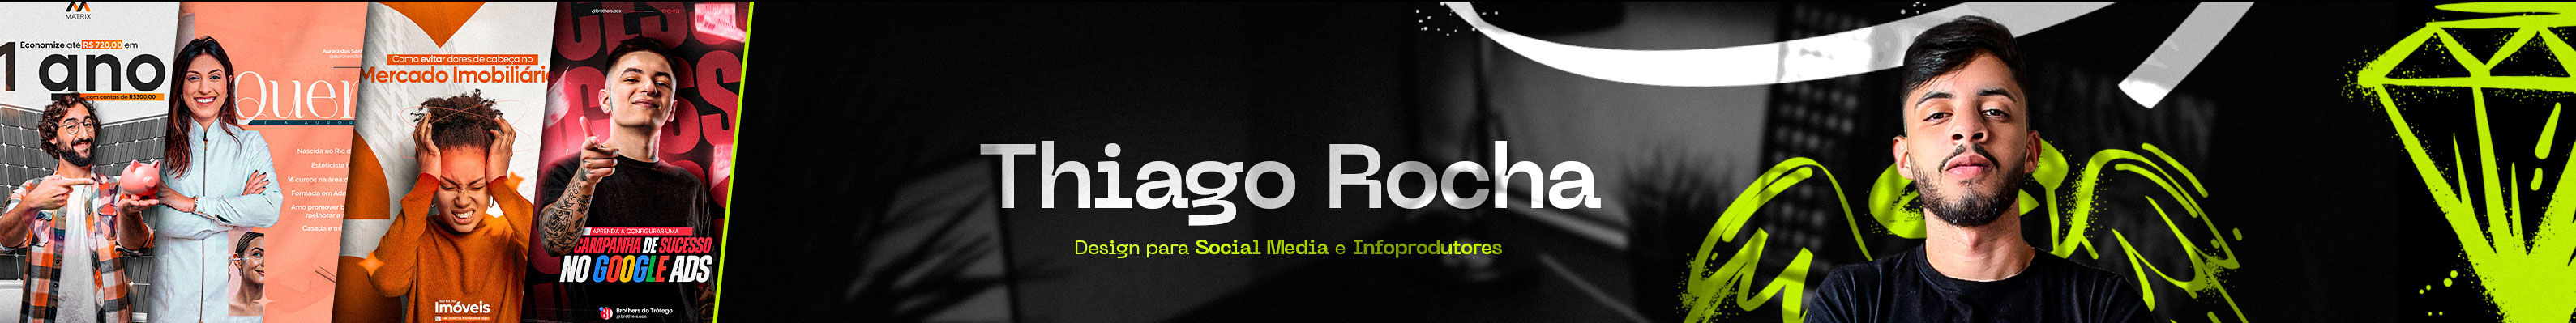 Profil-Banner von Thiago Rocha Designer